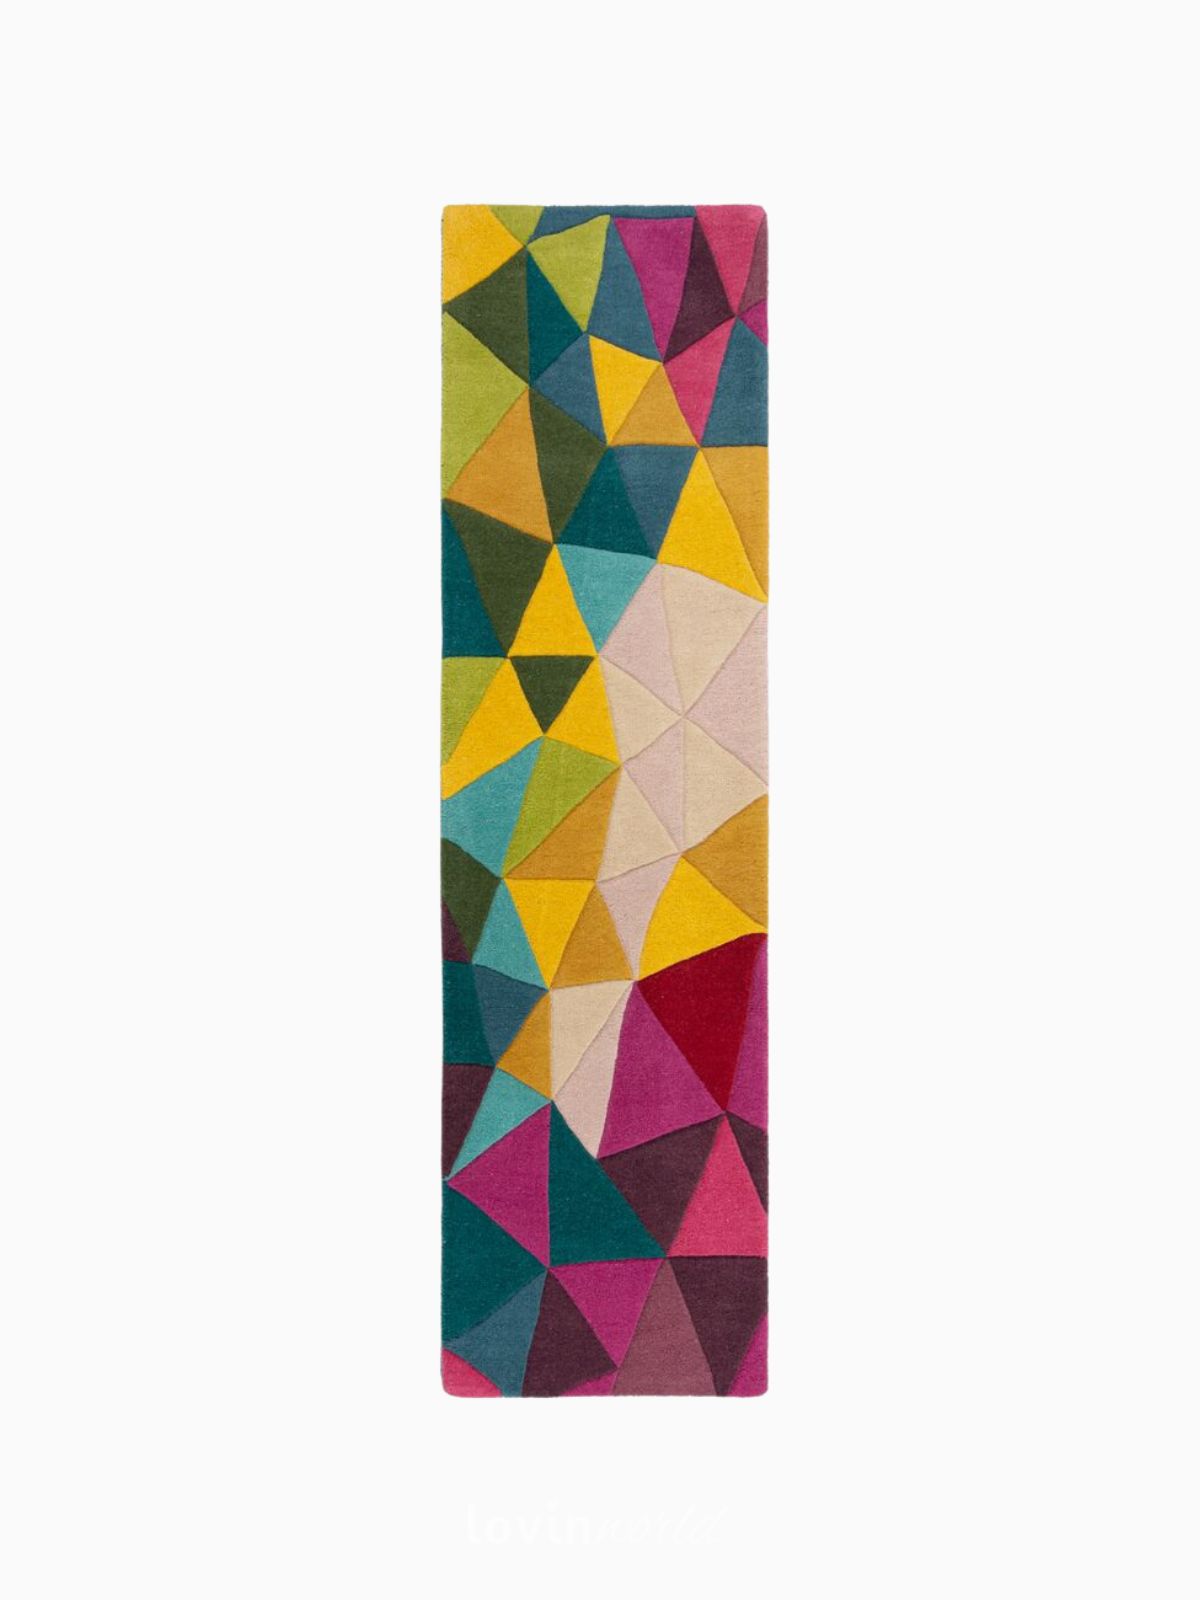 Runner di design Falmouth in lana, multicolore 60x230 cm.-1